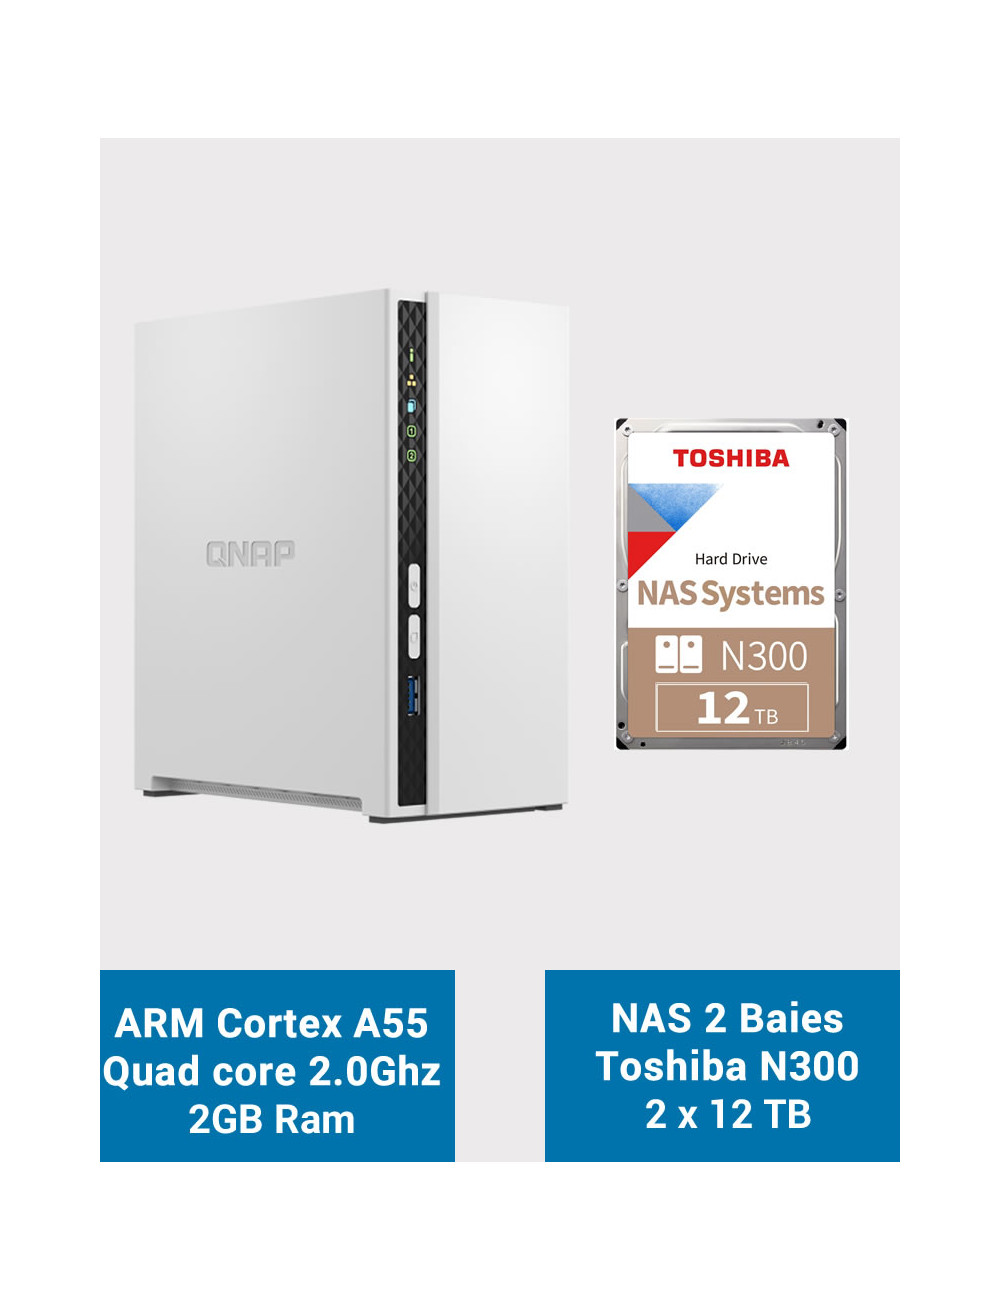 QNAP TS-233 NAS Server Toshiba N300 24TB (2x12TB)